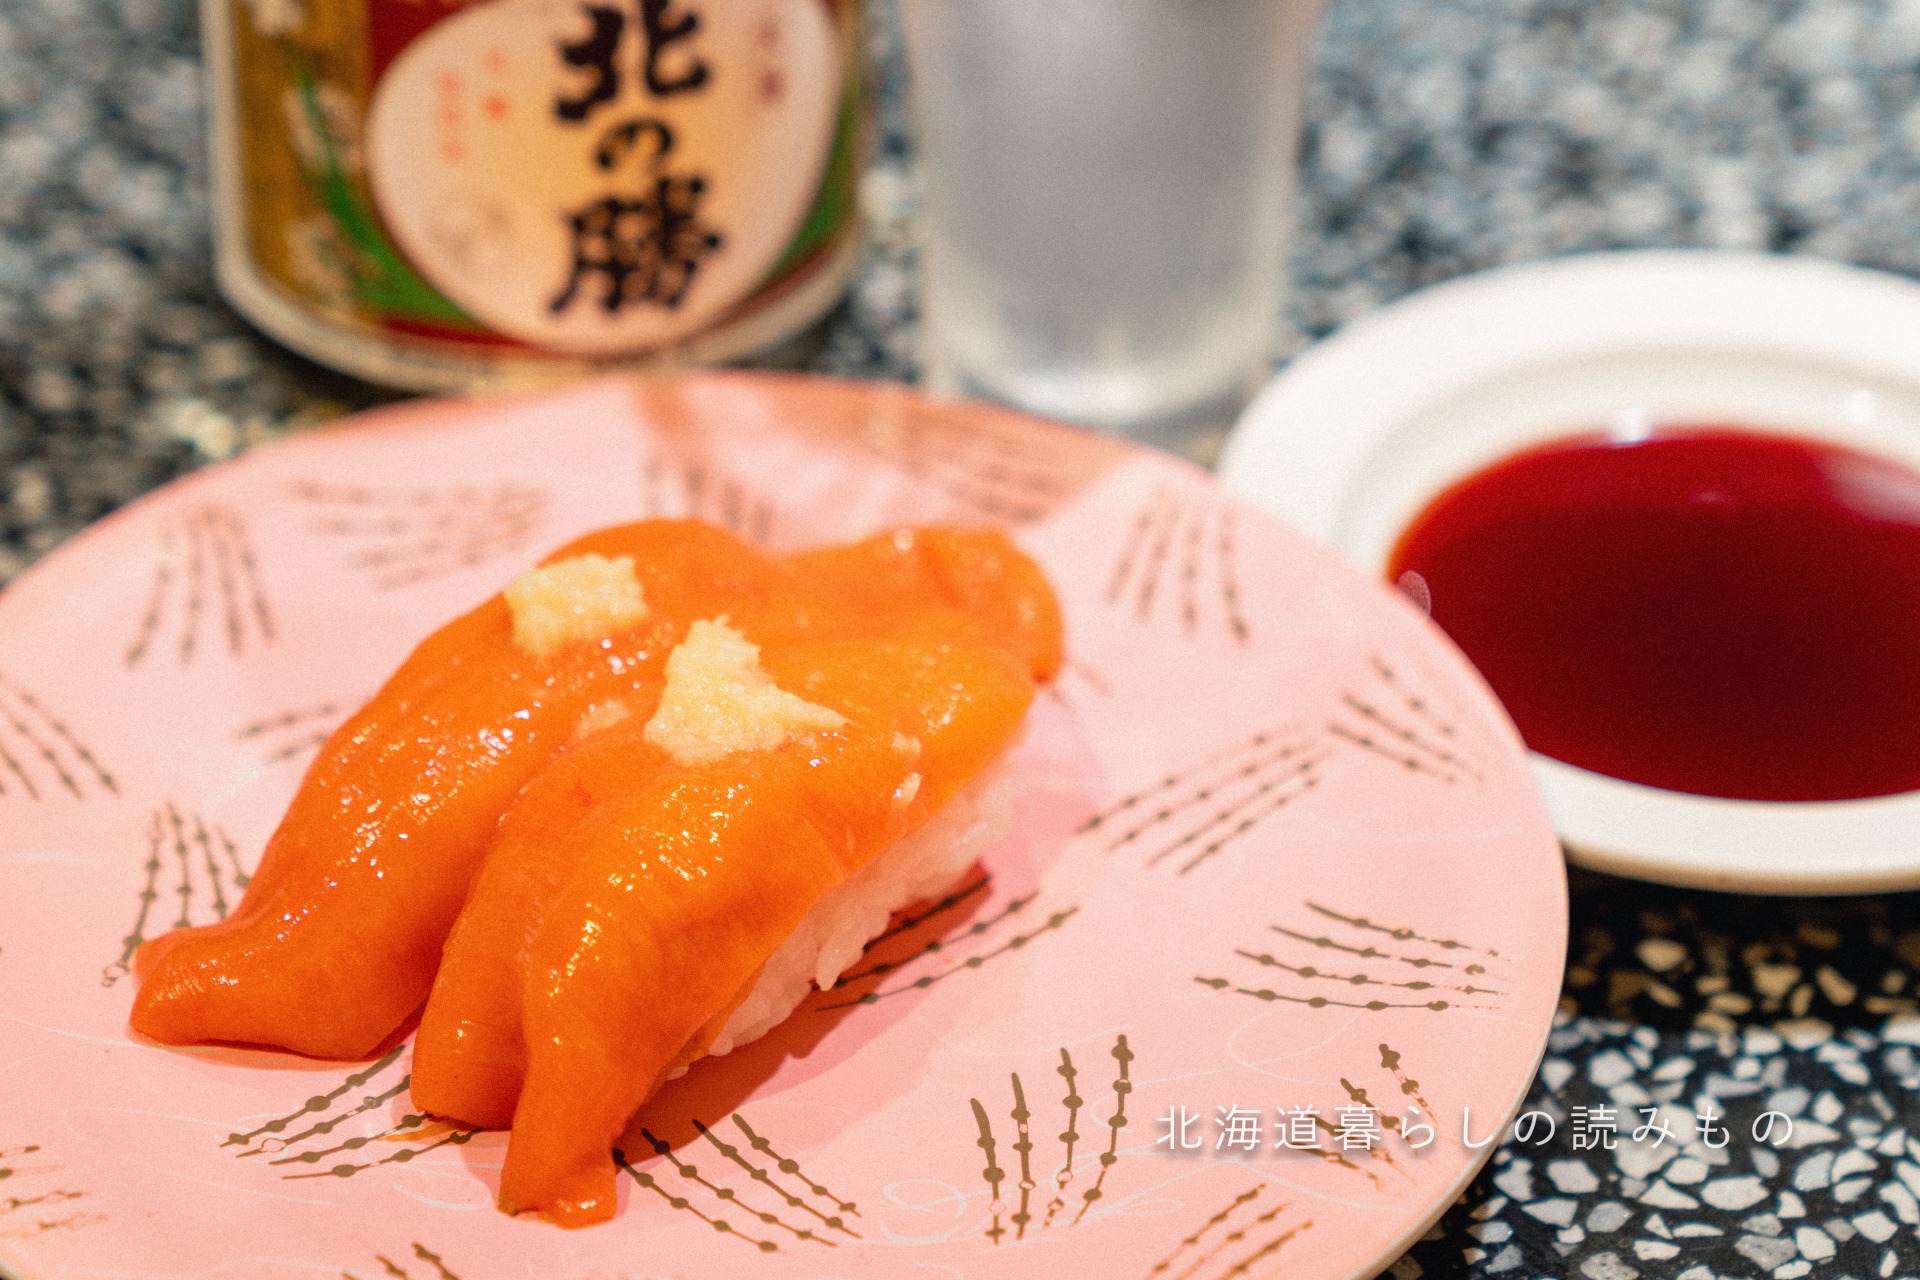 迴轉壽司根室花丸的菜單上的「紅海鞘」